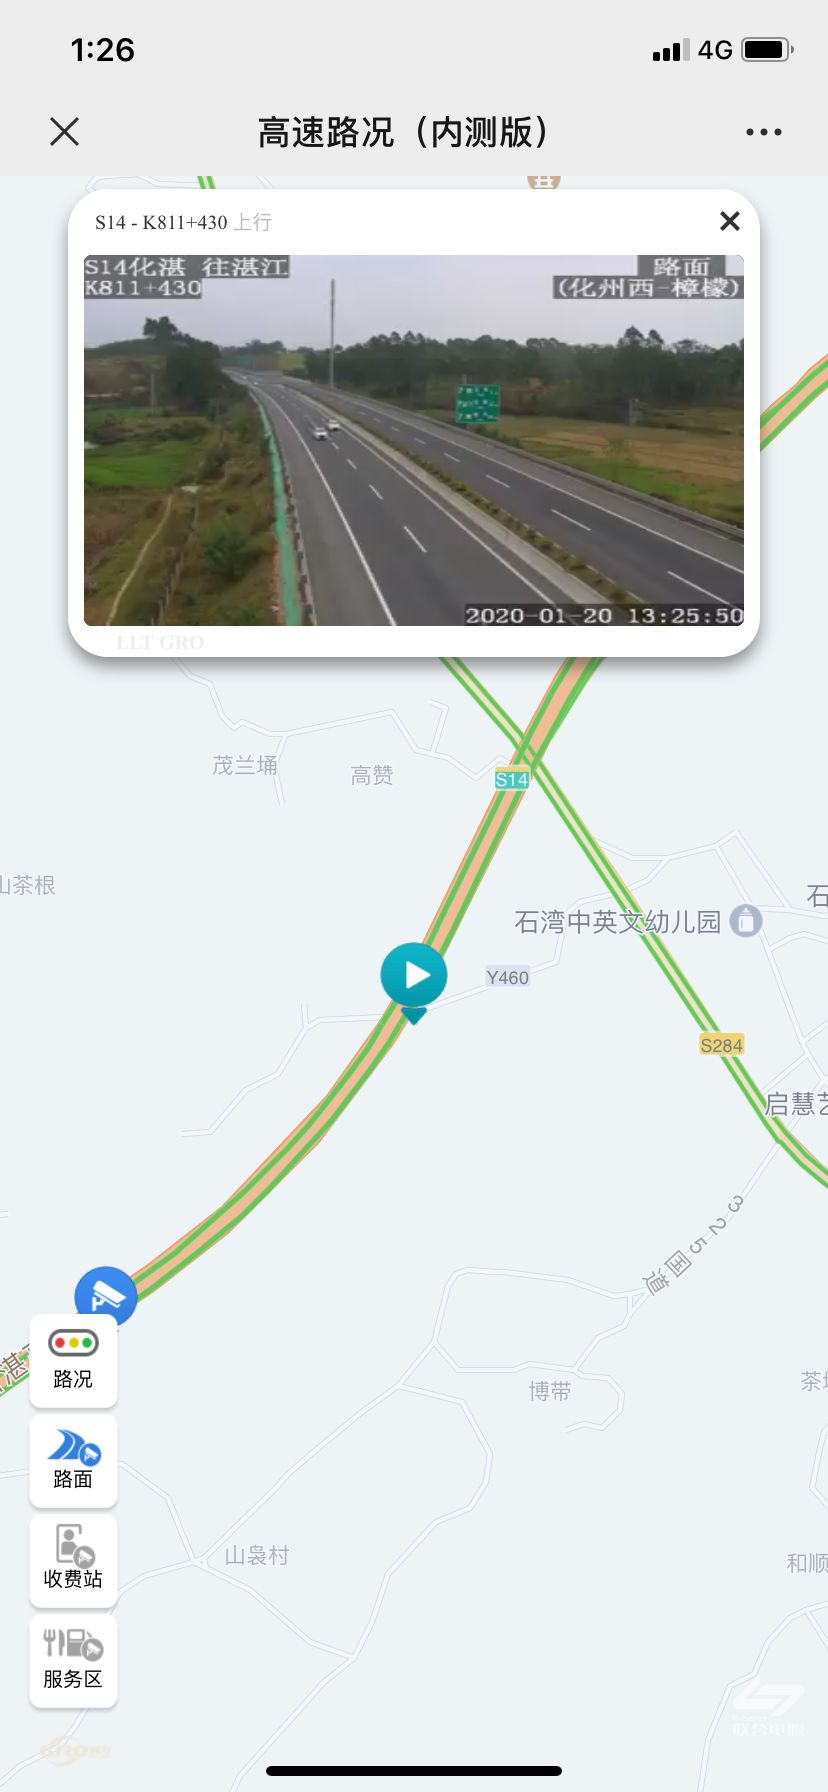 手机就可以实时查看广东高速路况视频